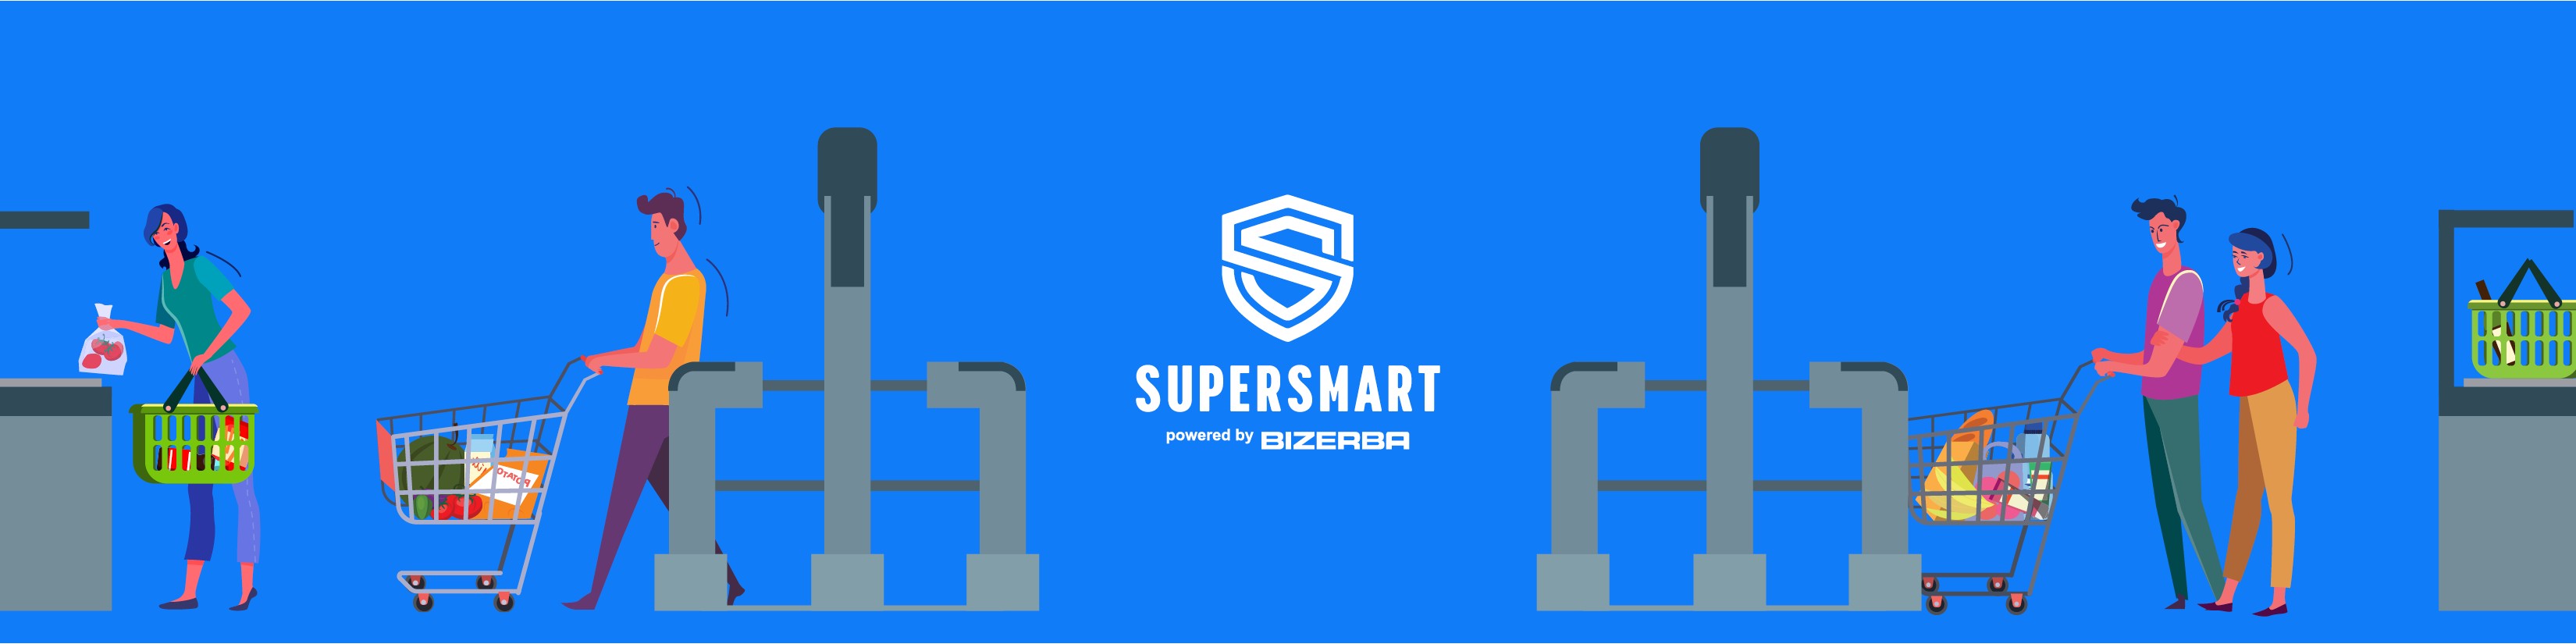 Supersmart - Retail Made Right | LinkedIn supersmart 35/33–52 kategorie entgiftung angebotscode detoxif8 0/1–2 gesamte kategorie entgiftung angebotscode 0/1–2 gutschein 6/14–28 5 il y a 0/3–16 unternehmen kundendienst vorteil supersmart 0/1–2 kundendienst vorteil supersmart 1997 0/1–2 kunde supersmart e mail 0/1–3 ausgezeichnet 4.5 6718 bewertungen 0/1–2 x supersmart e mail 0/1–2 supersmart gutscheine 1/4–7 gutscheine 4/9–19 onlineshop 0/1–2 registriere mich black friday 0/1–2 vorteil supersmart 1997 2021 0/1–2 vitamine 1/2–8 multivitamine 0/2–4 18h30 das unternehmen kundendienst 0/1–2 online shops 0/1–4 bewertungen 0/2–4 schnell und zuverlässig anonym 0/1–2 black friday 5 0/1–2 supersmart e mail anredeform 0/1–2 supersmart e mail passwort 0/1–2 verfällt der preisnachlass supersmart 0/1–2 preisnachlass supersmart die liste 0/1–2 supersmart die liste interessanter 0/1–2 mineralien 0/1–2 nahrungsergänzungsmittel 5/5–13 jours wieder einmal gut 0/1–2 gut schnell und zuverlässig 0/1–2 qualität 0/3–10 probiotika 1/2–4 4.5 6718 bewertungen 5 0/1–2 zuverlässig anonym 5 il 0/1–2 rabatt 4/17–45 y a 2 jours 0/1–2 bewertungen 5 il y 0/1–2 supersmart 1997 2021 supersmart.com 0/1–2 il y a 2 0/1–2 5 auf die gesamte 0/1–2 verfällt der preisnachlass warning 0/1–2 nährstoffe 1/1–4 2021 supersmart.com alle vervielfältigungsrechte 0/1–3 club supersmart 0/2–5 preisnachlass warning ok 0/1–2 produkt 0/2–4 gutscheinen 1/2–4 bestellung 0/5–13 vervielfältigungsrechte sind vorbehalten x 0/1–2 6718 bewertungen 5 il 0/1–2 markt 1/2–5 produkte 3/7–13 9h00 bis 18h30 0/1–2 kategorien 0/2–5 unternehmen 2/2–5 e mail 1/4–7 akteur 0/1–2 kunden 5/2–7 vereinigten staaten 0/1–2 produkten 1/2–3 il y a 35 0/1–3 y a 42 jours 0/1–3 eingabe ihrer e mail 0/1–3 il y a 42 0/1–3 überprüfen sie die korrekte 0/1–3 839 71 von 9h00 0/1–2 y a 35 jours 0/1–3 schließlich von einem zusätzlichen 0/1–3 korrekte eingabe ihrer e 0/1–3 vorbehalten x kostenlos danke 0/1–2 vorbehalten 1997 2021 supersmart.com 0/1–2 anonym 5 il y 0/1–2 bewertung wie das letzte 0/1–3 e mail adresse 0/2–4 lebensmittel 0/1–2 gesundheit 2/2–4 rabatte 3/3–8 erfahrung 0/1–2 stornierung der newsletter verfällt 0/1–3